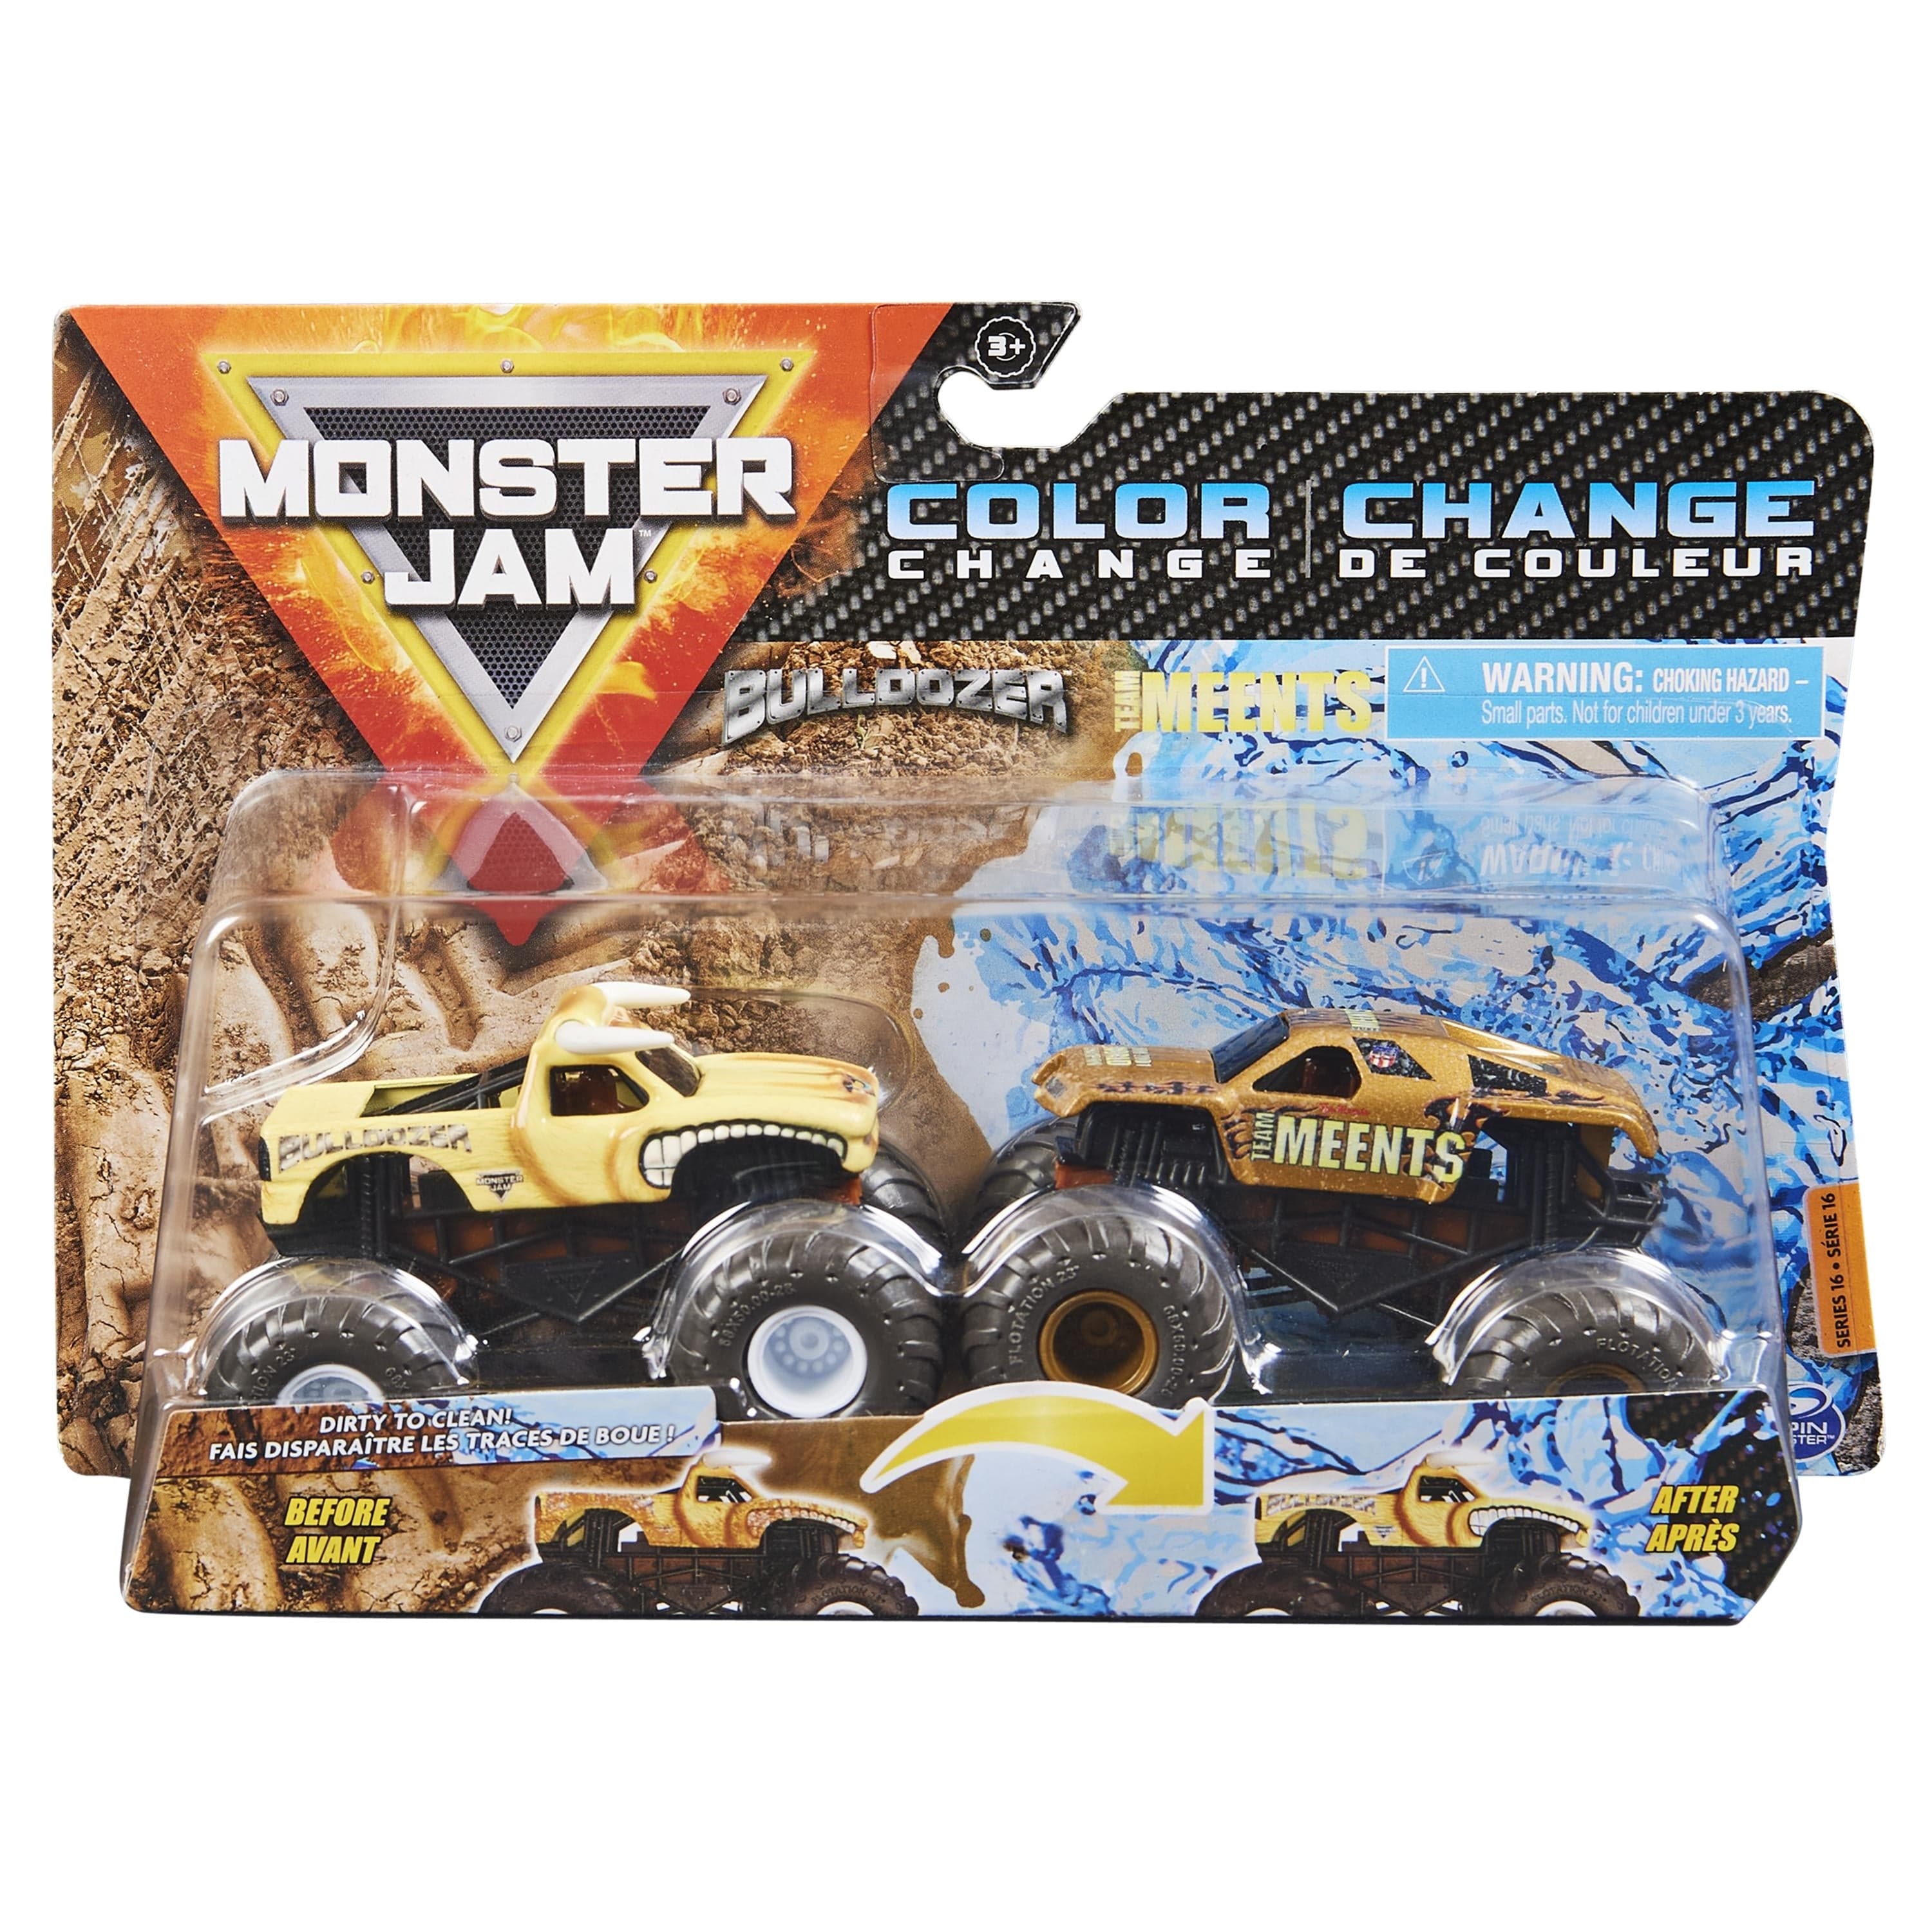 Monster Jam: Official 1:64 Scale Die-Cast Monster Trucks 2-Pack Assort